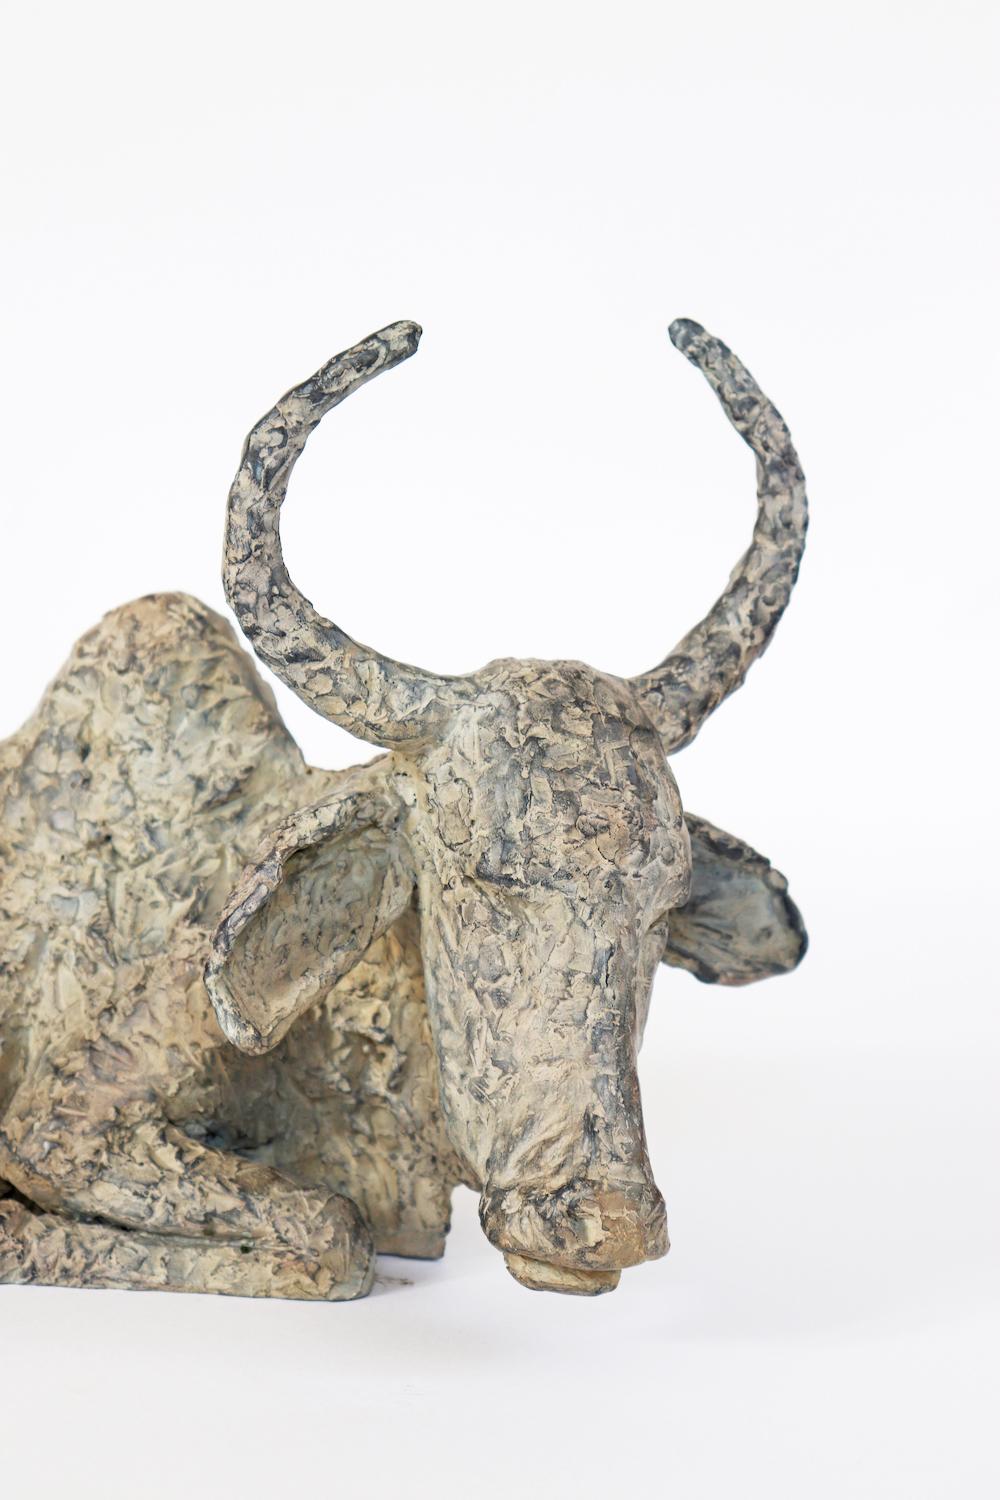 Holy Cow de Marine de Soos - Sculpture en bronze - Animaux, Inde en vente 2